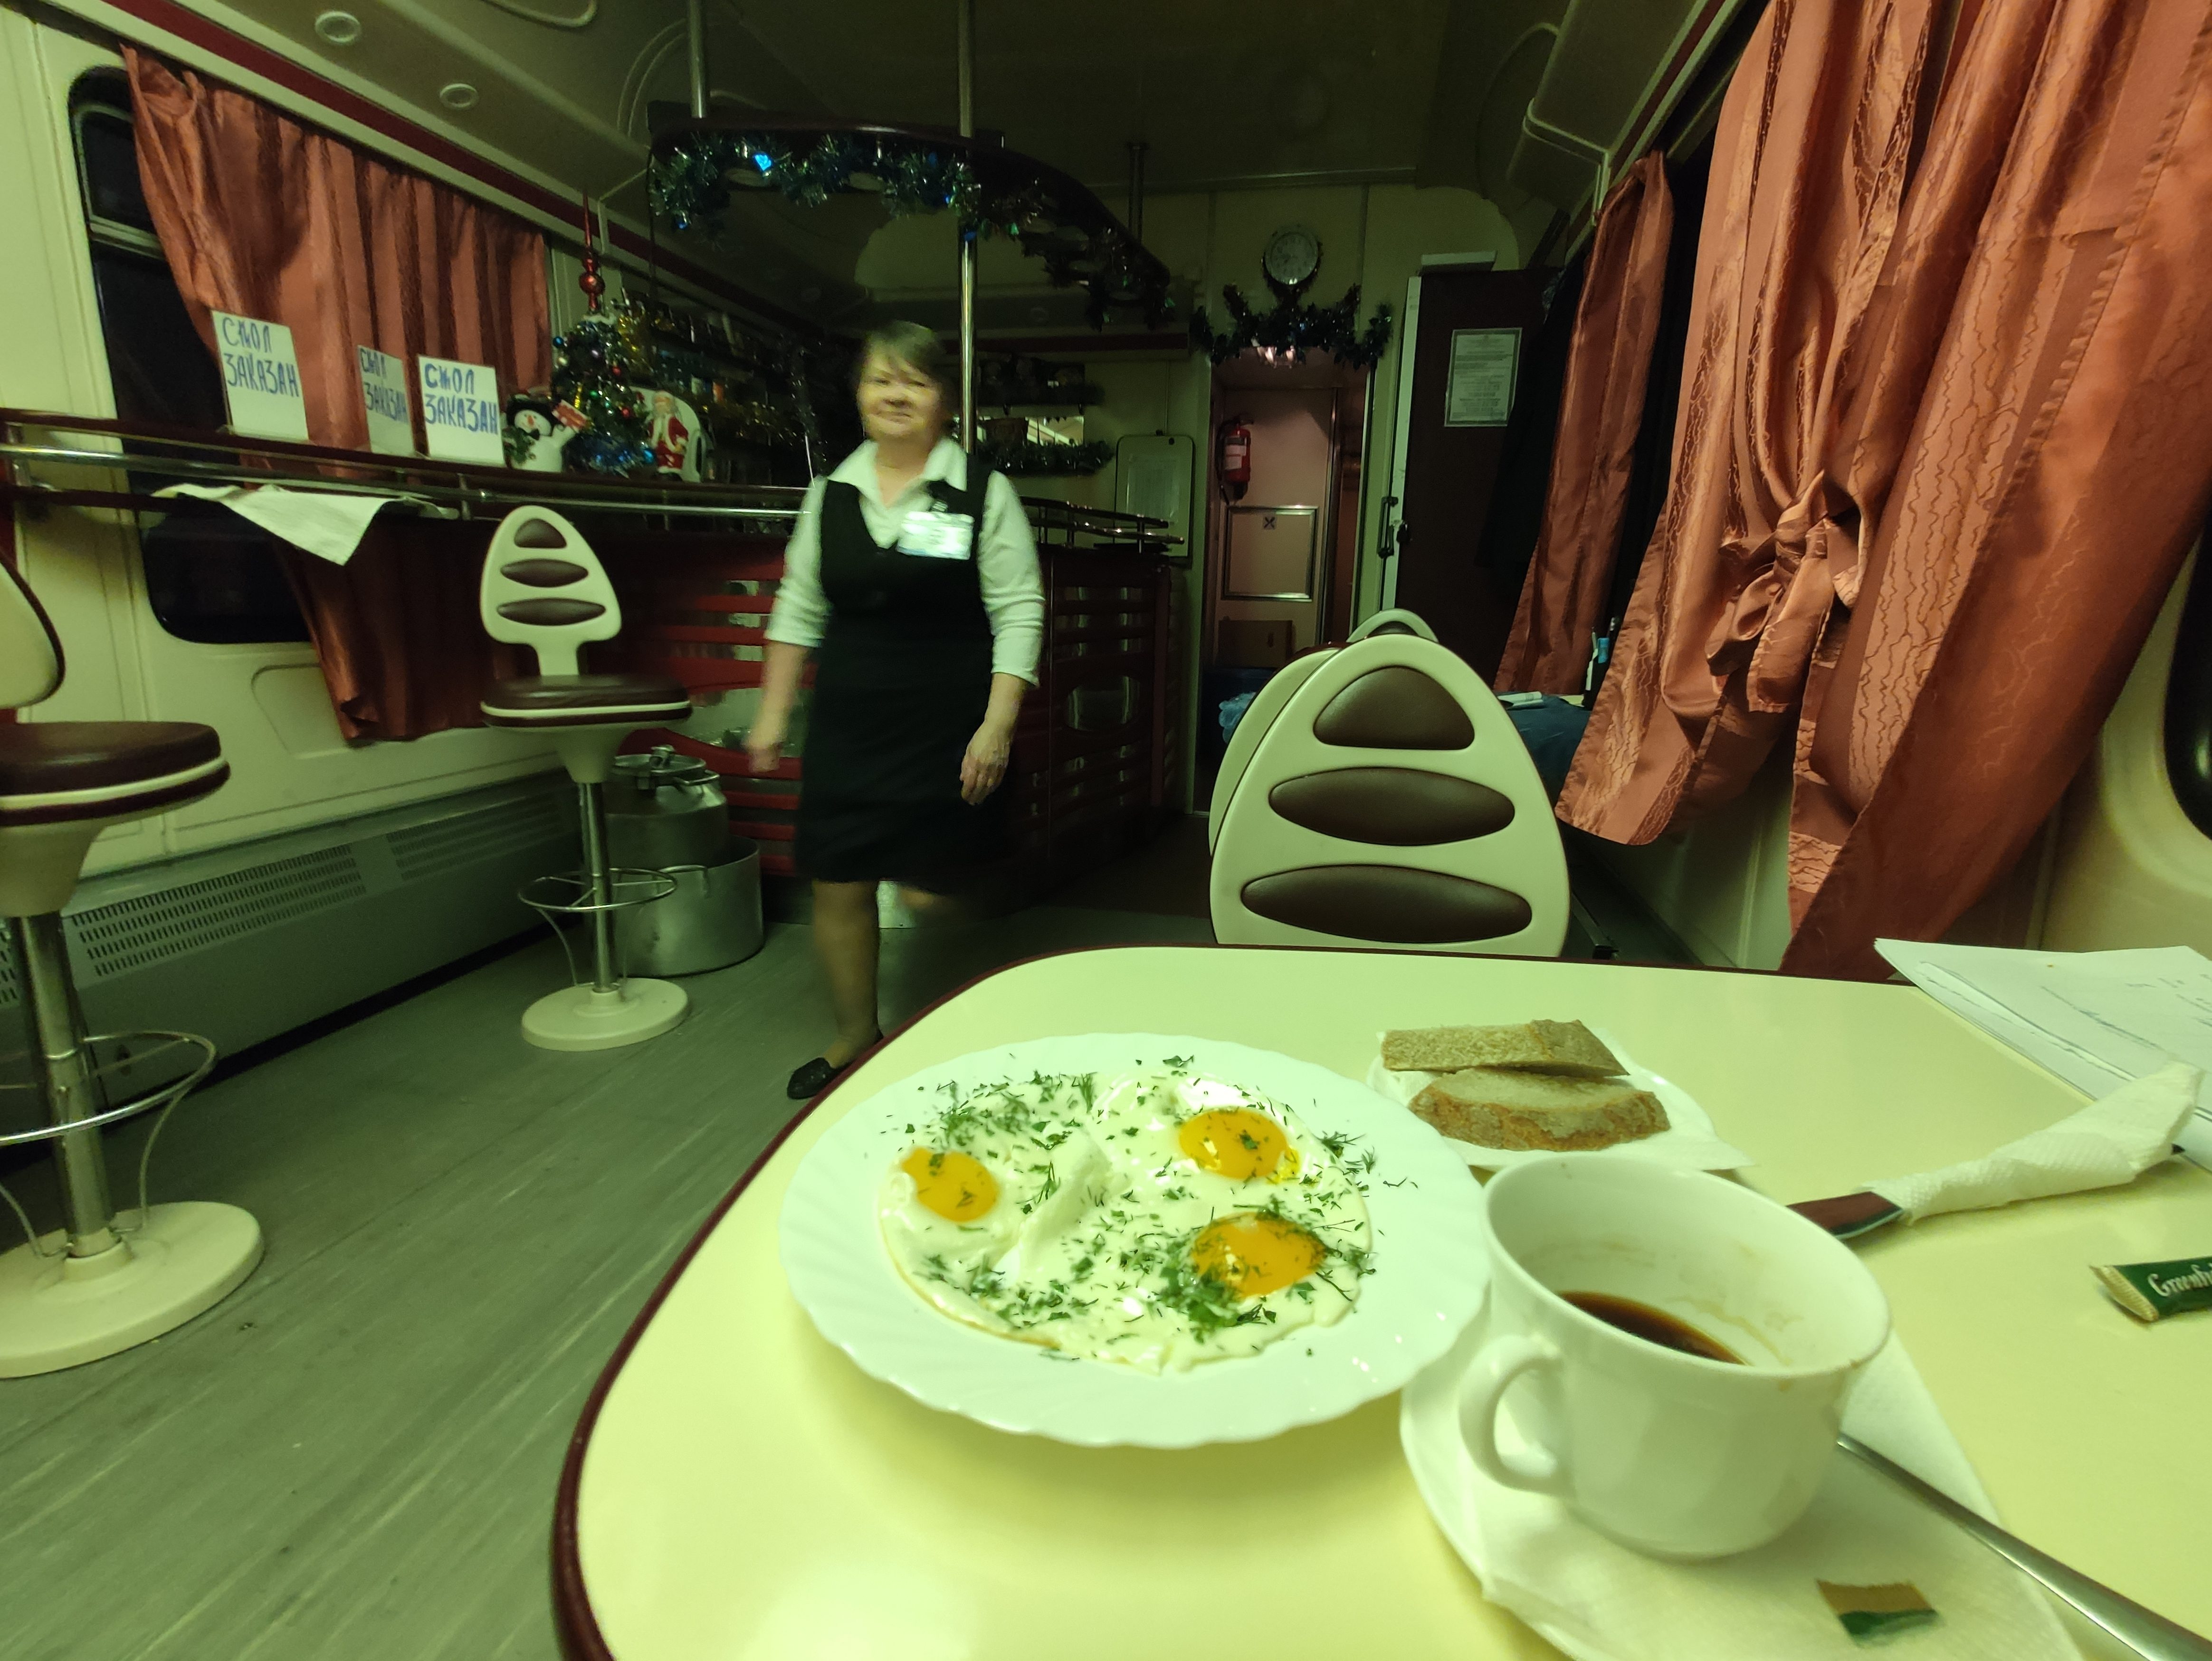 Mourmansk, porte de l'Arctique/ aufildeslieux.fr/ Le wagon restaurant © K.Hibbs